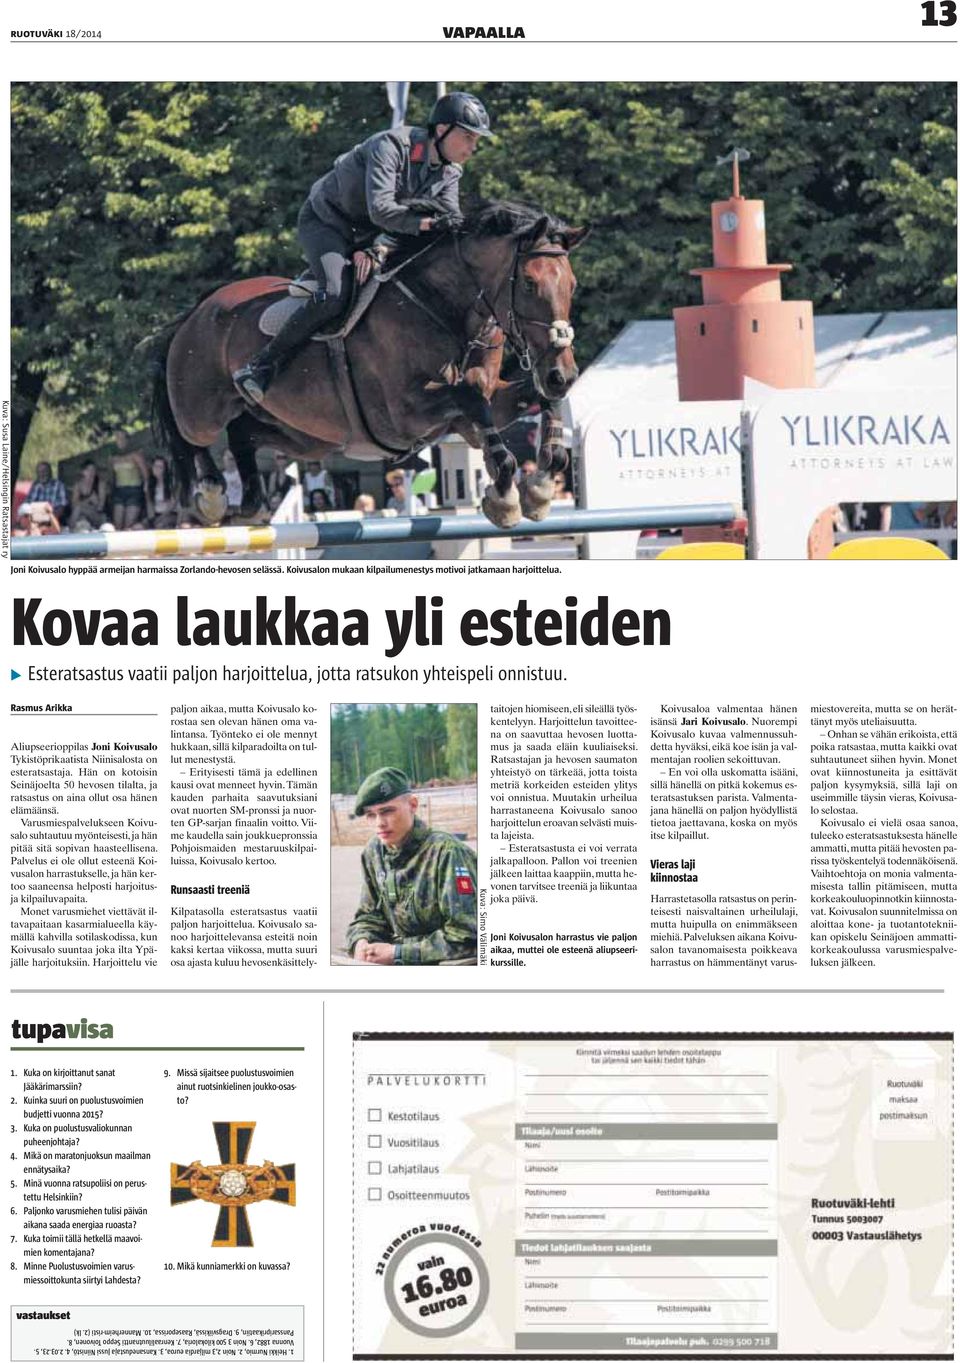 Rasmus Arikka Aliupseerioppilas Joni Koivusalo Tykistöprikaatista Niinisalosta on esteratsastaja. Hän on kotoisin Seinäjoelta 50 hevosen tilalta, ja ratsastus on aina ollut osa hänen elämäänsä.